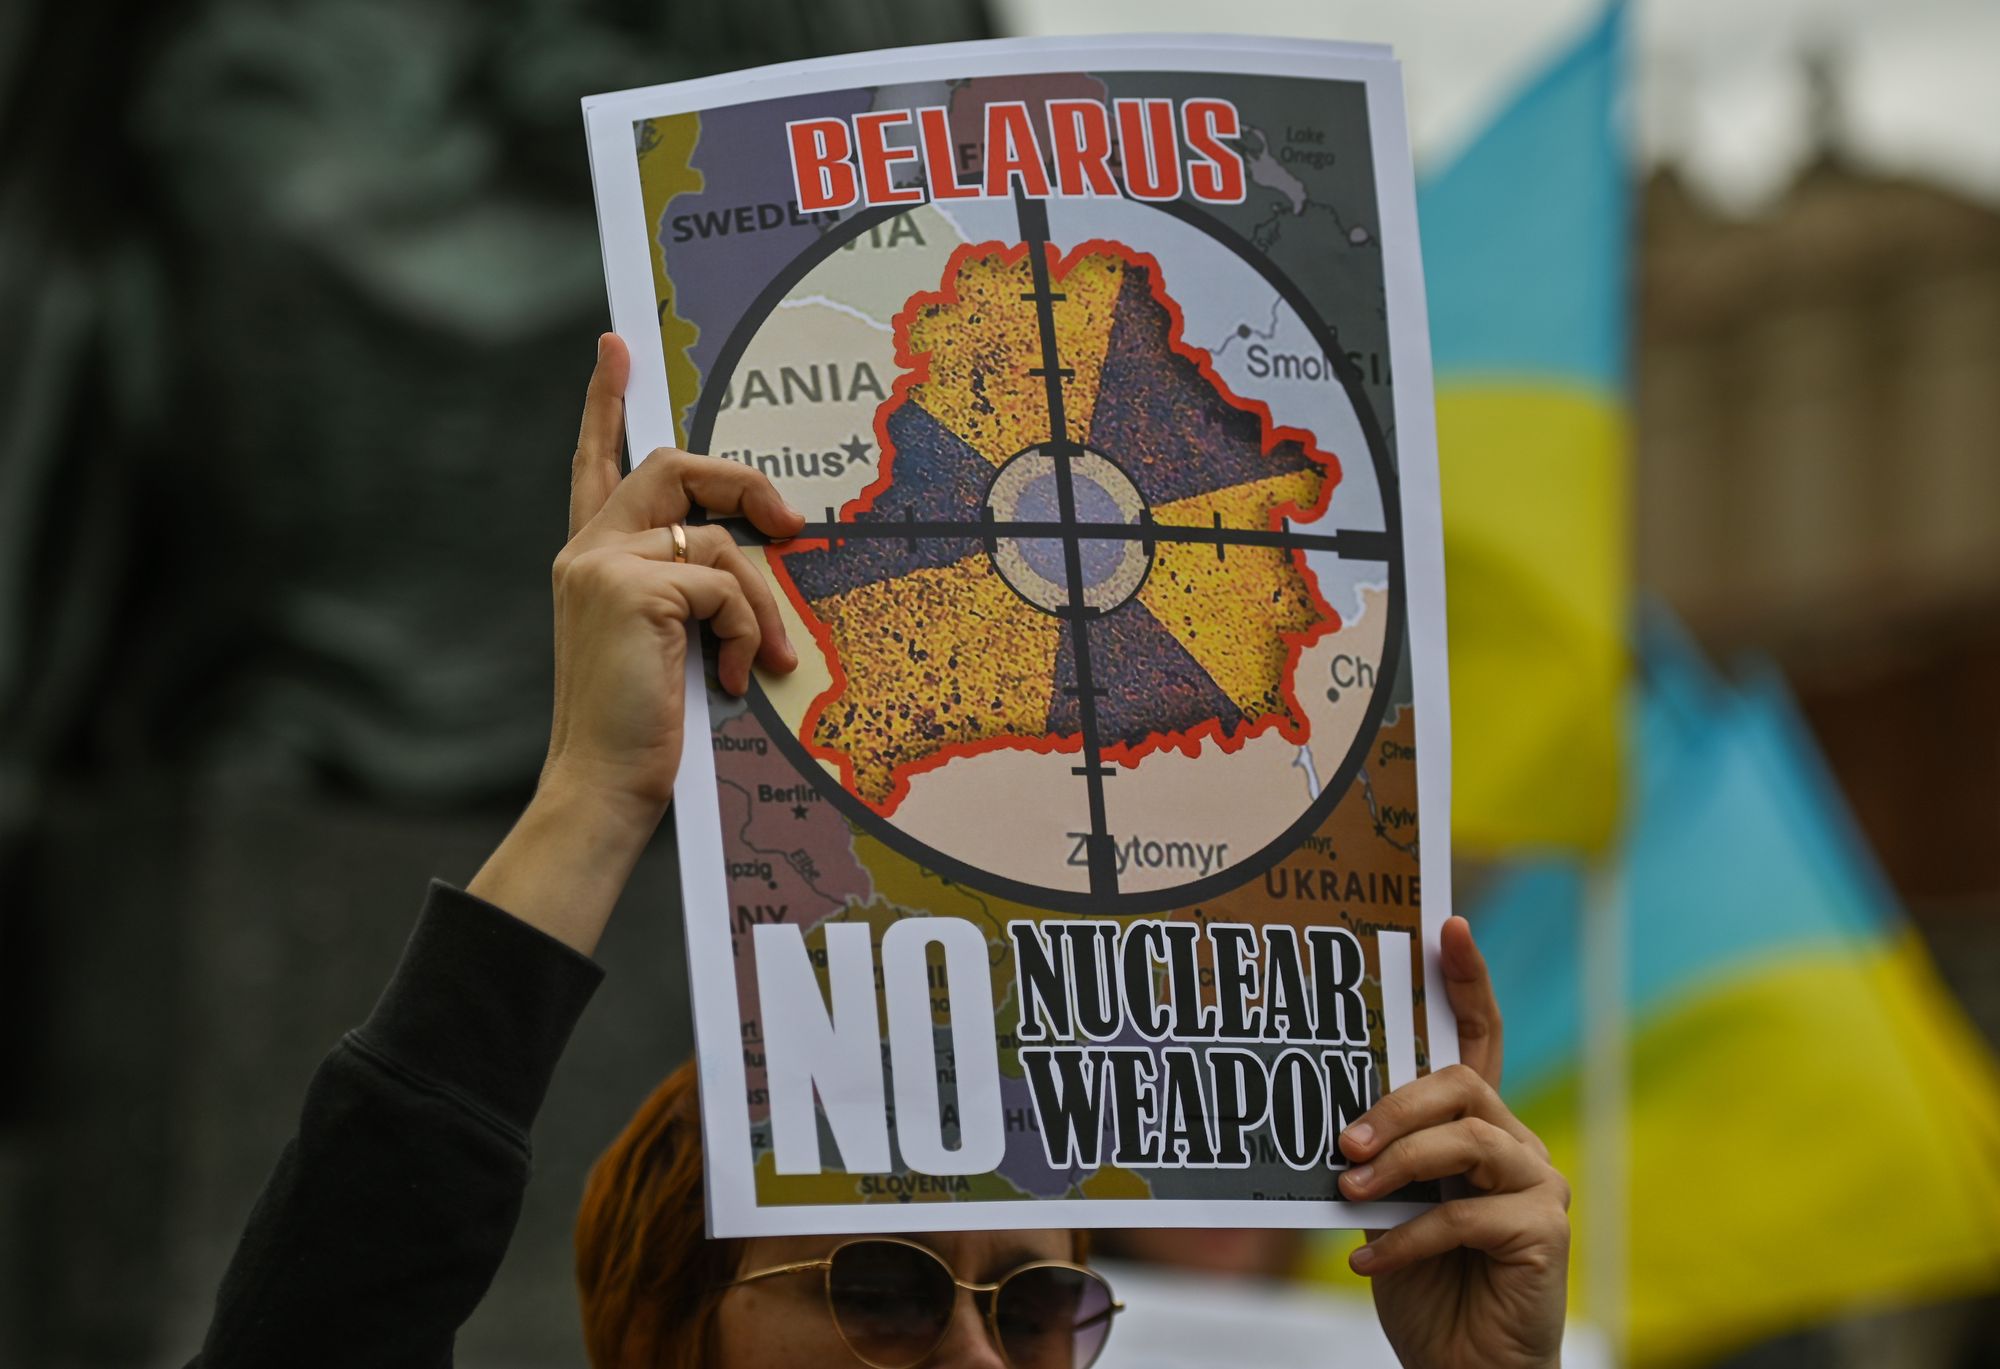 Belarus Weekly: No nukes in Belarus, yet